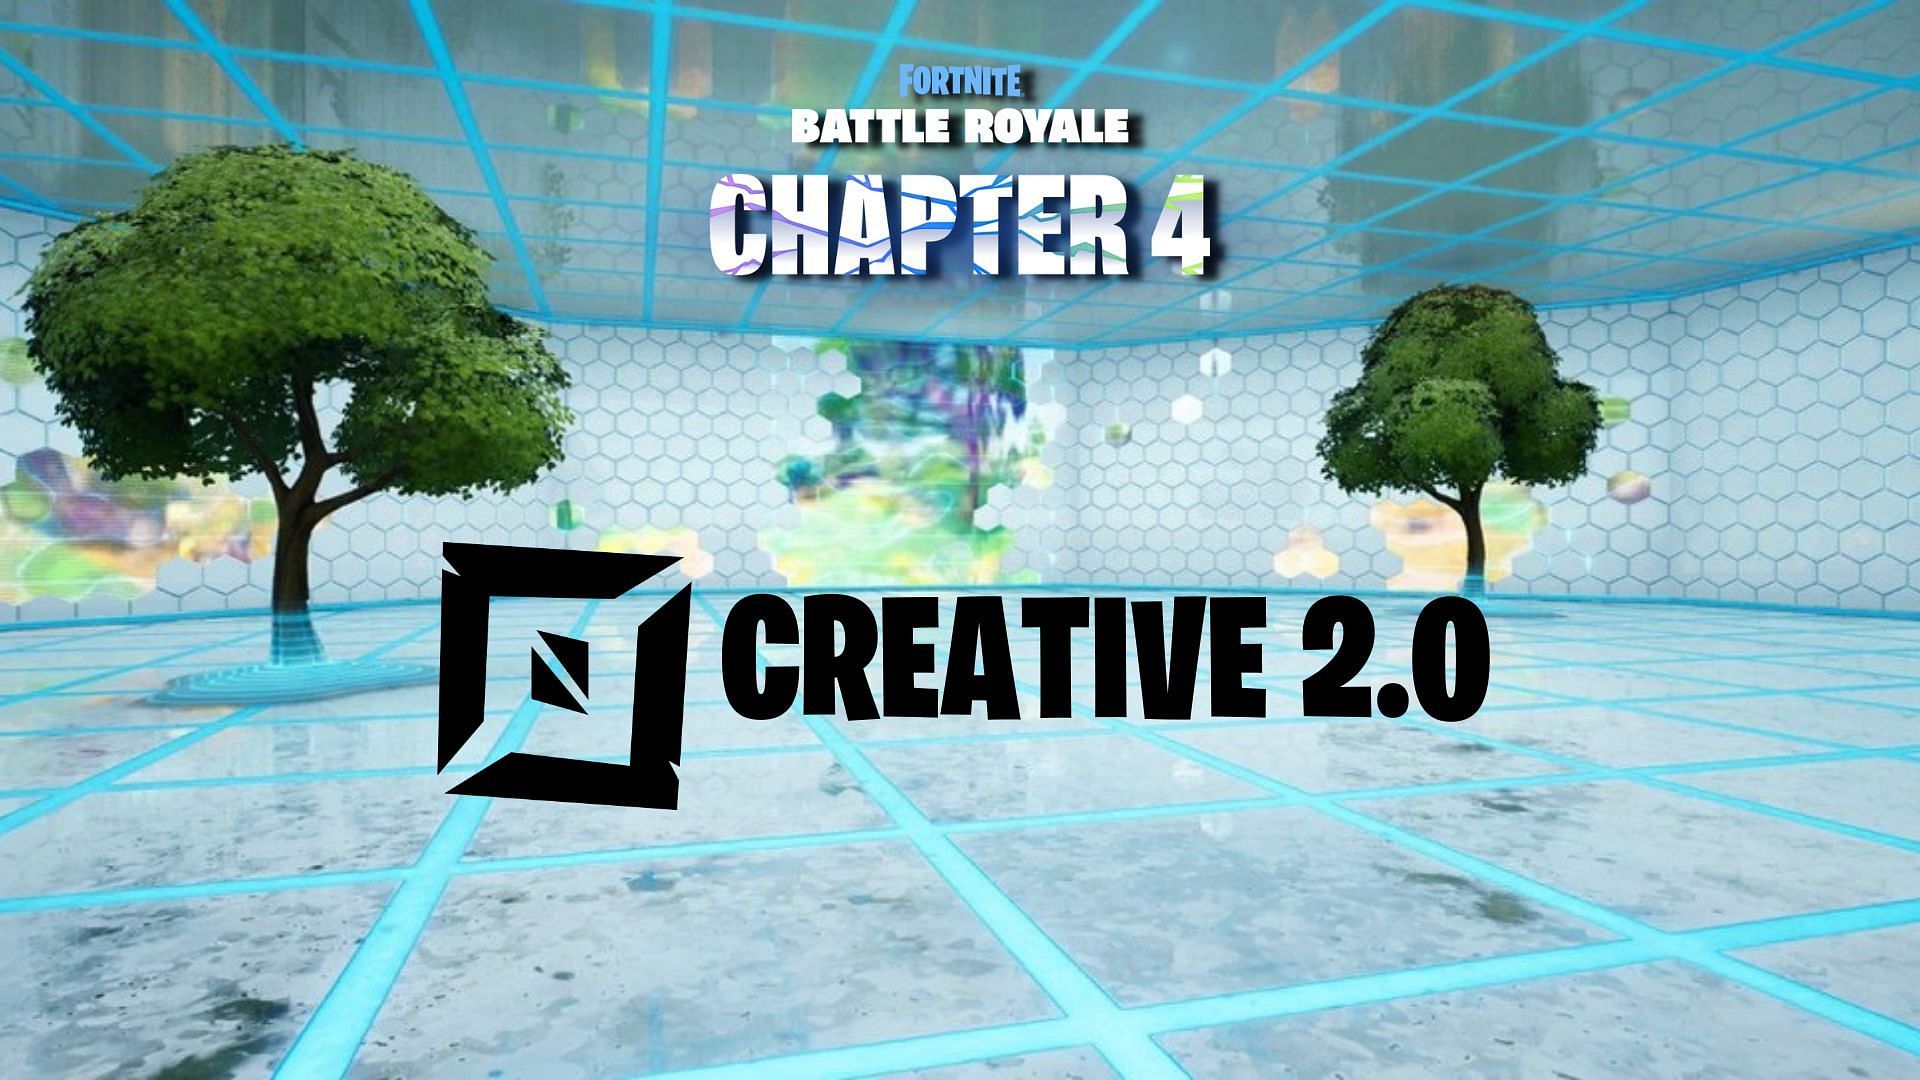 Fortnite Creative 2.0